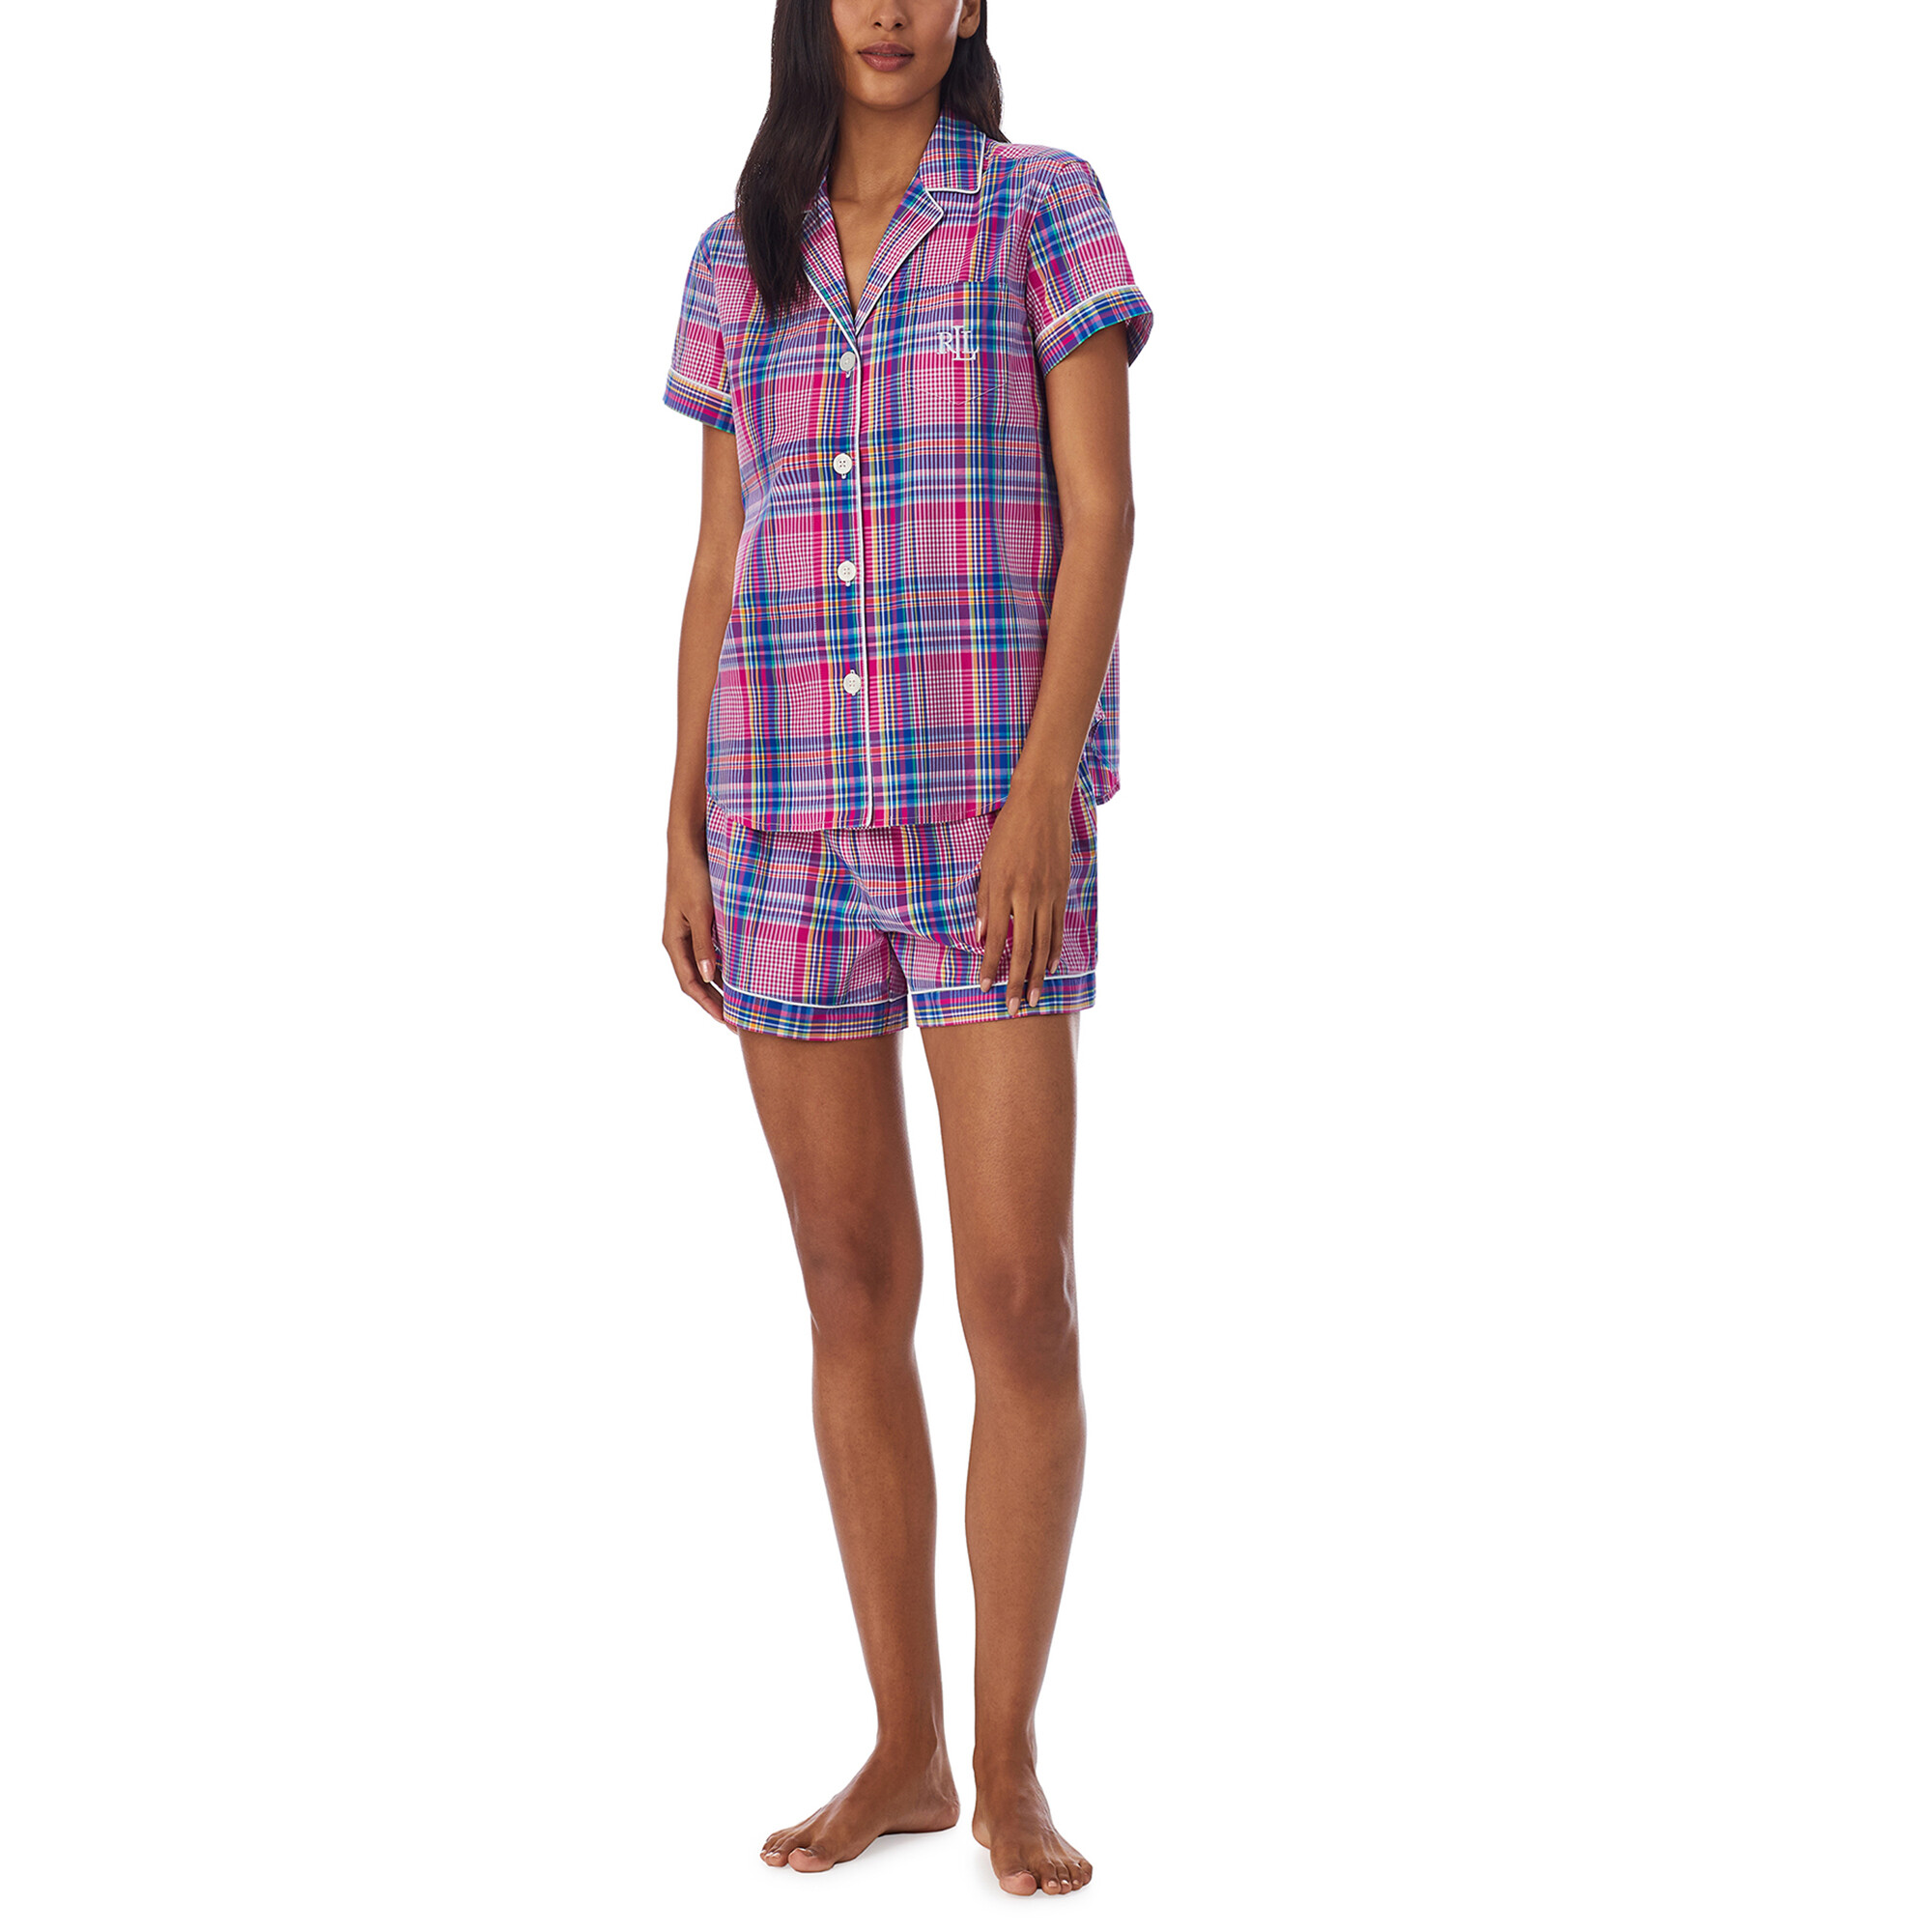 Imbracaminte Femei LAUREN Ralph Lauren Cotton Short Sleeve Boxer PJ Set Pink Plaid image3